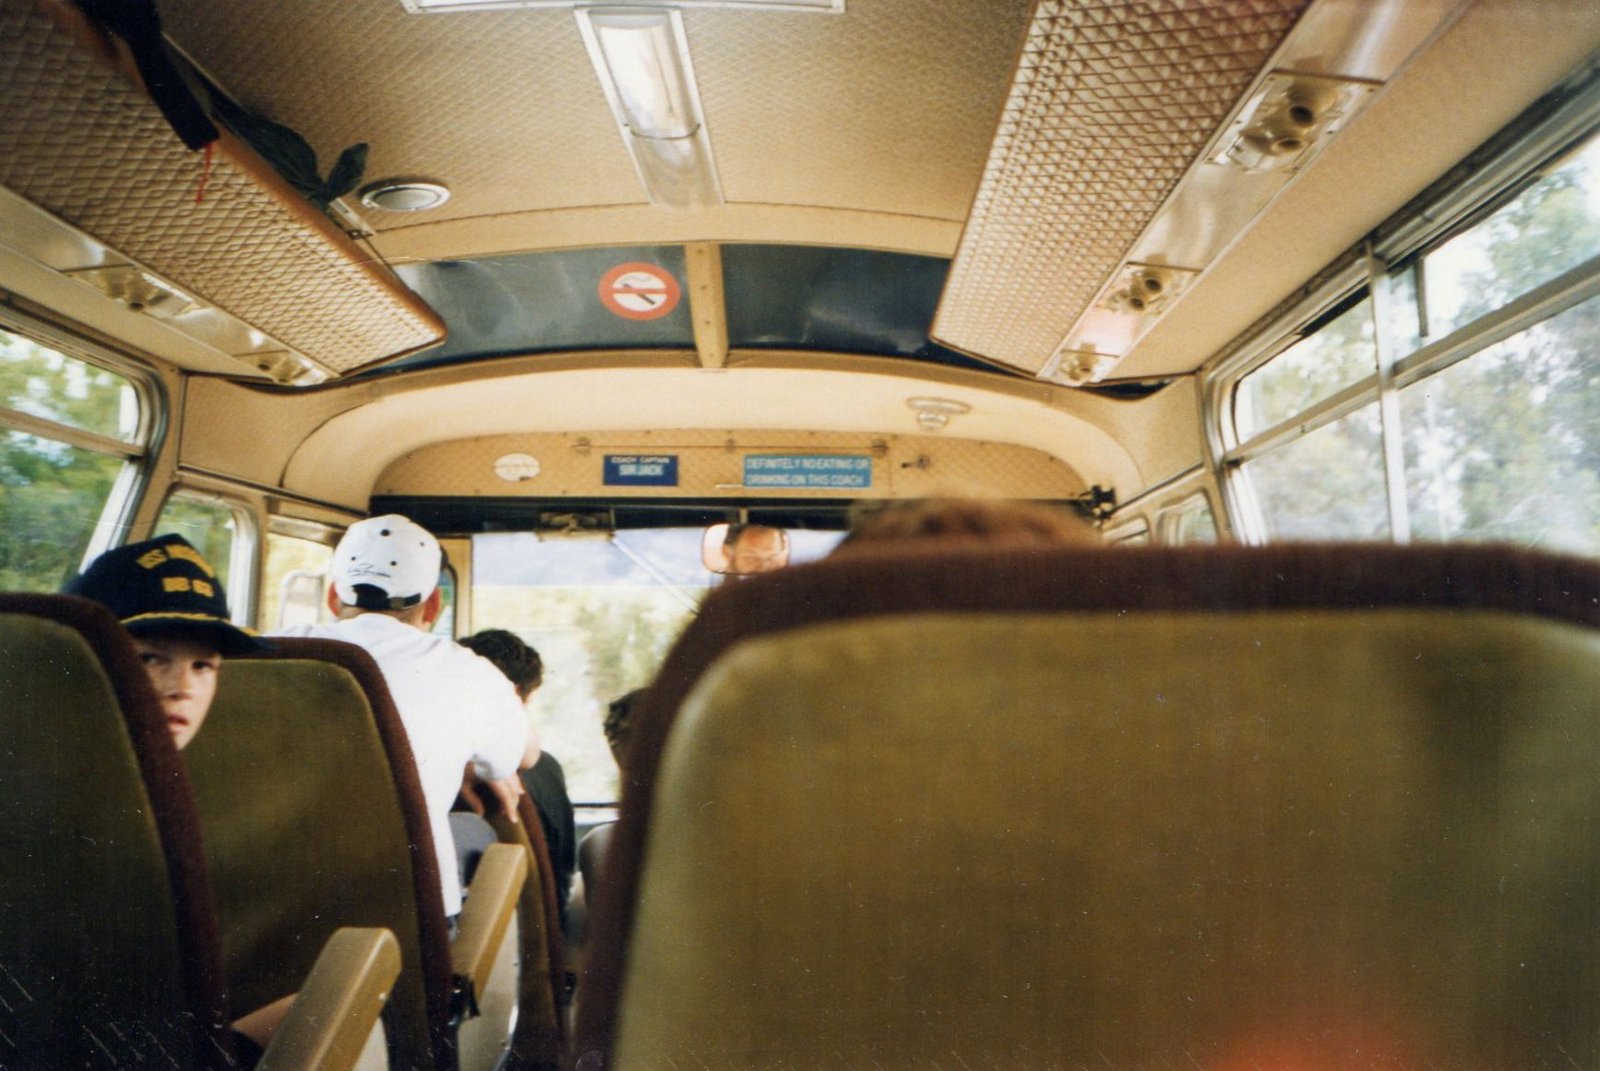 58 On the bus.jpg